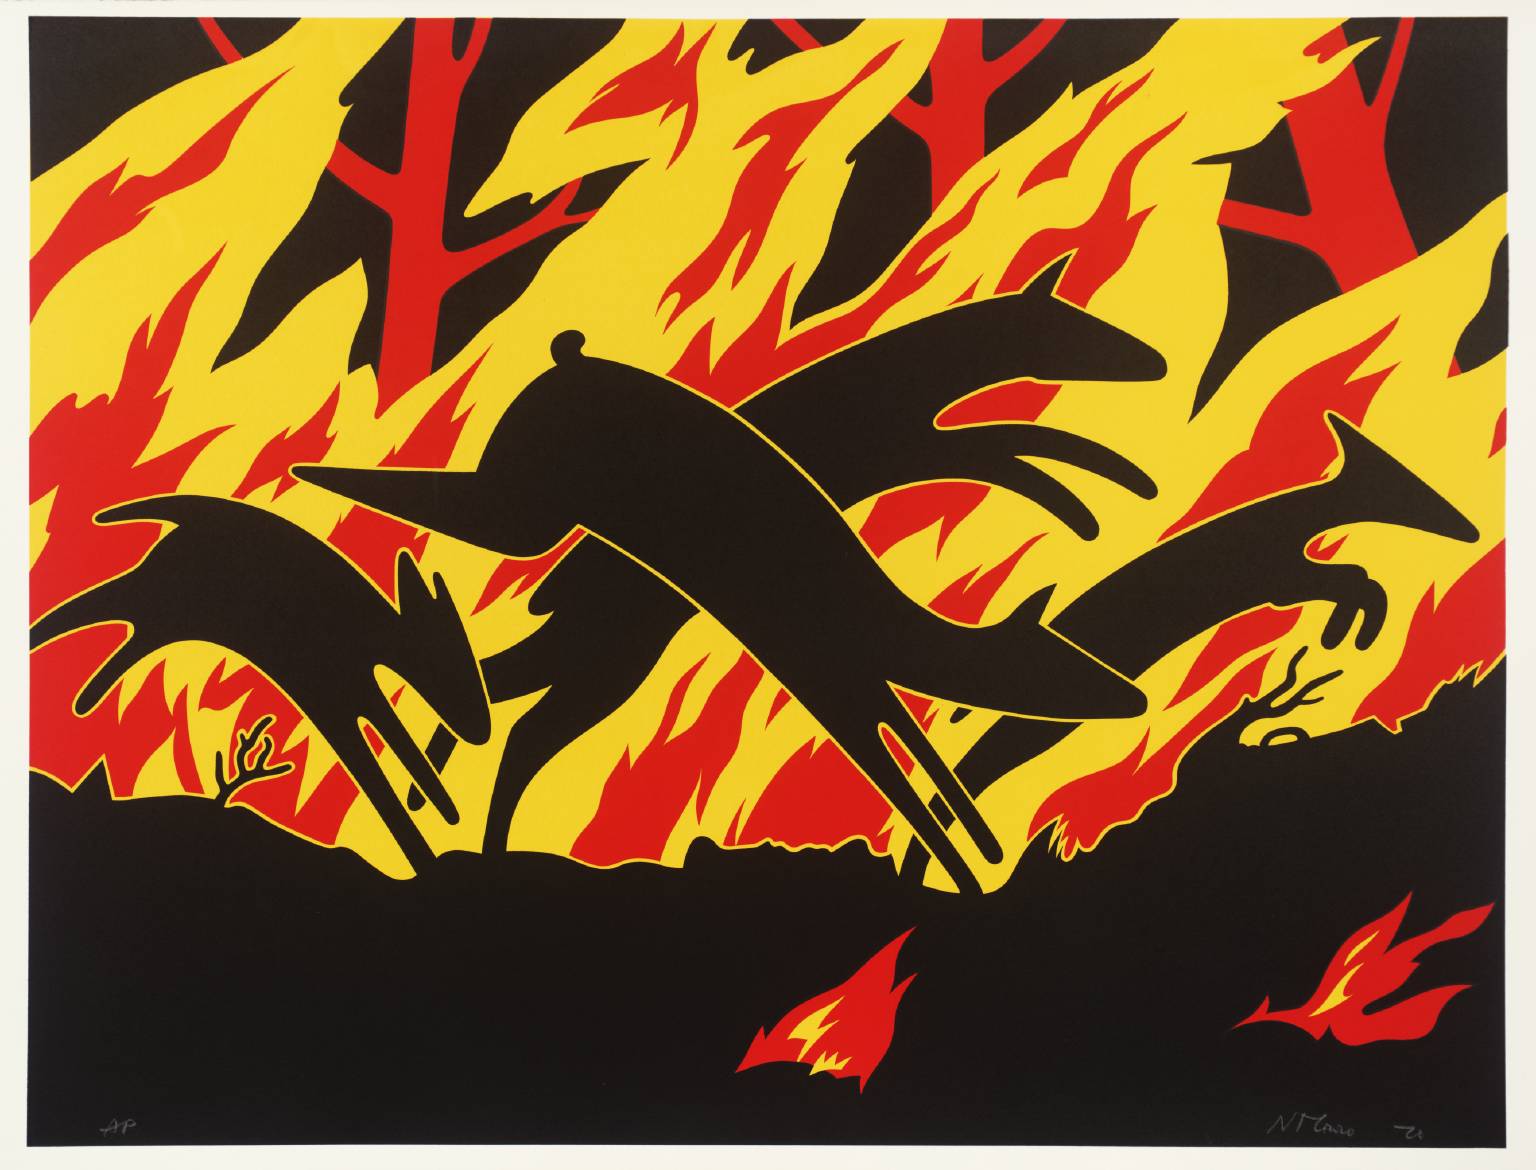 Animals Running Through Fire', Nicholas Monro, 1970 | Tate